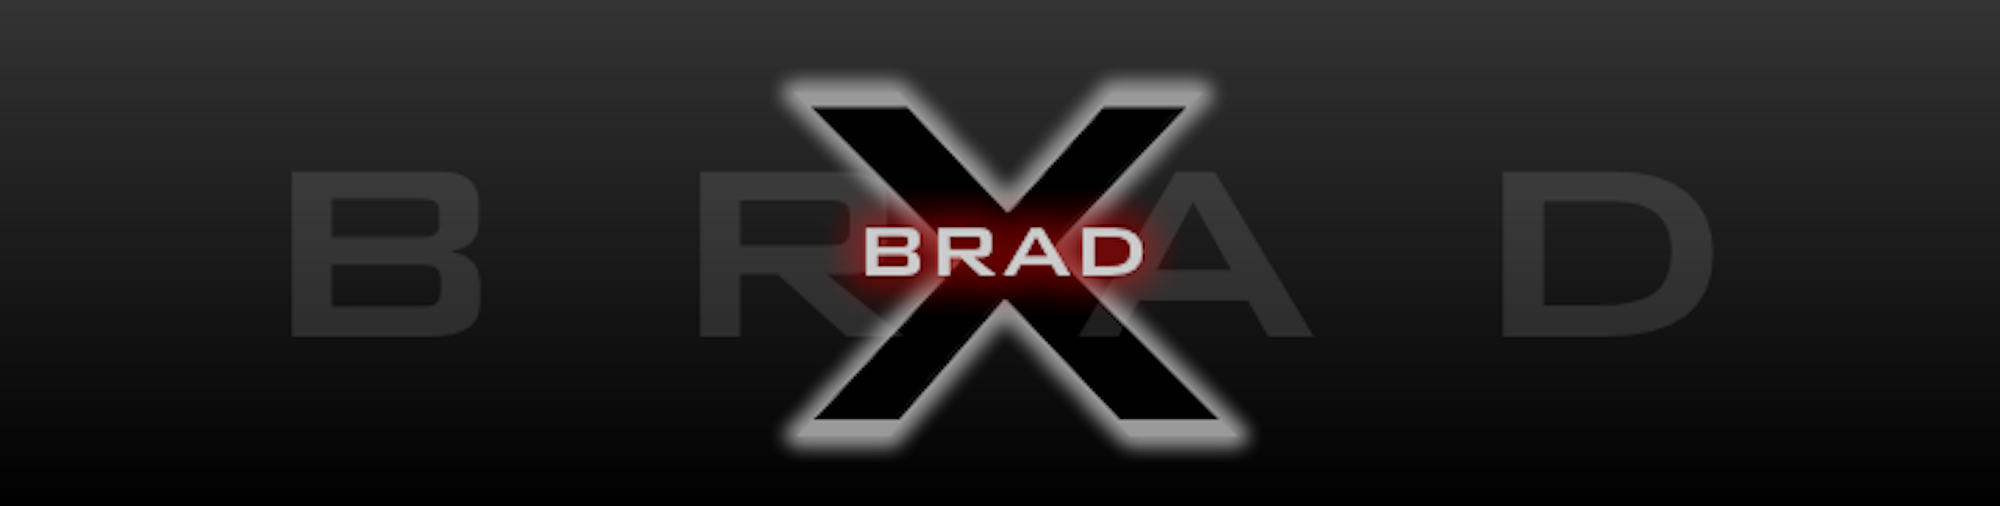 Brad-X